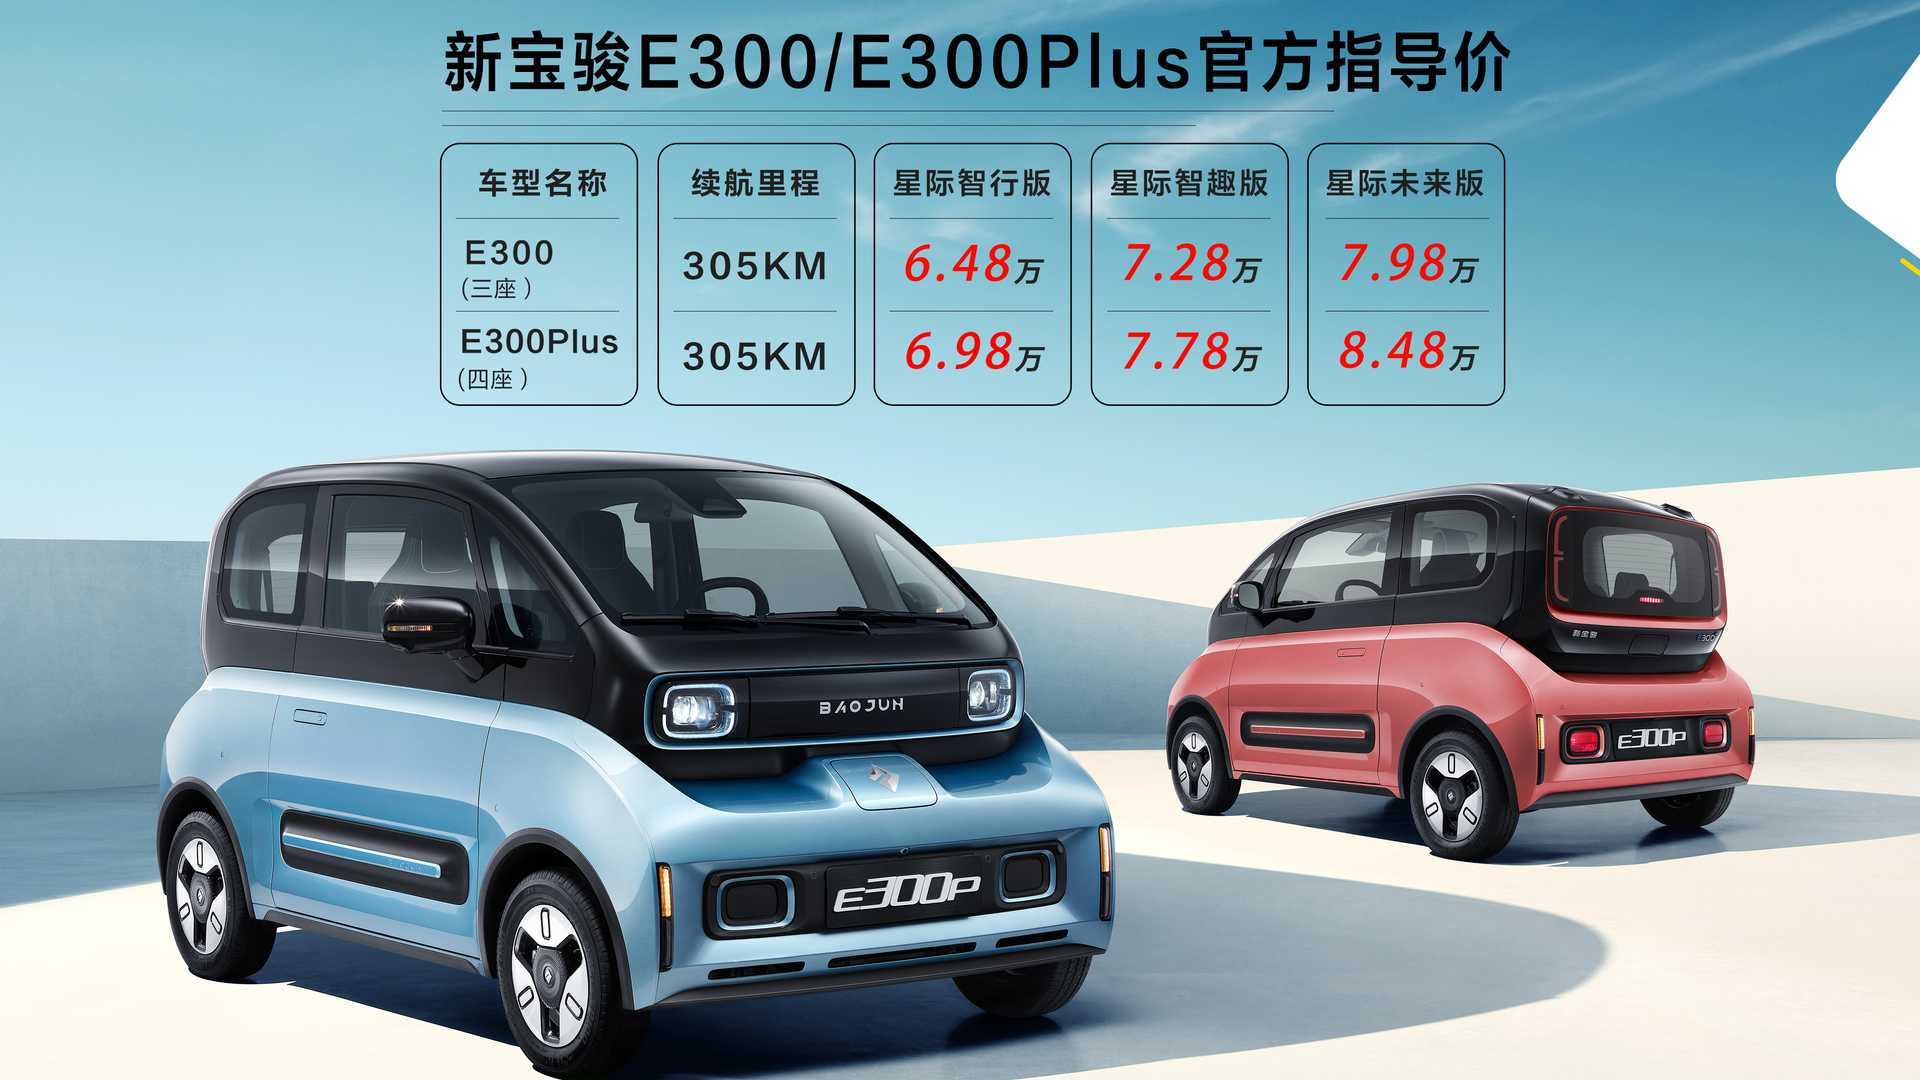 Баоцзюнь из GM продает новые электромобили в Китае менее чем за 10 000 долларов